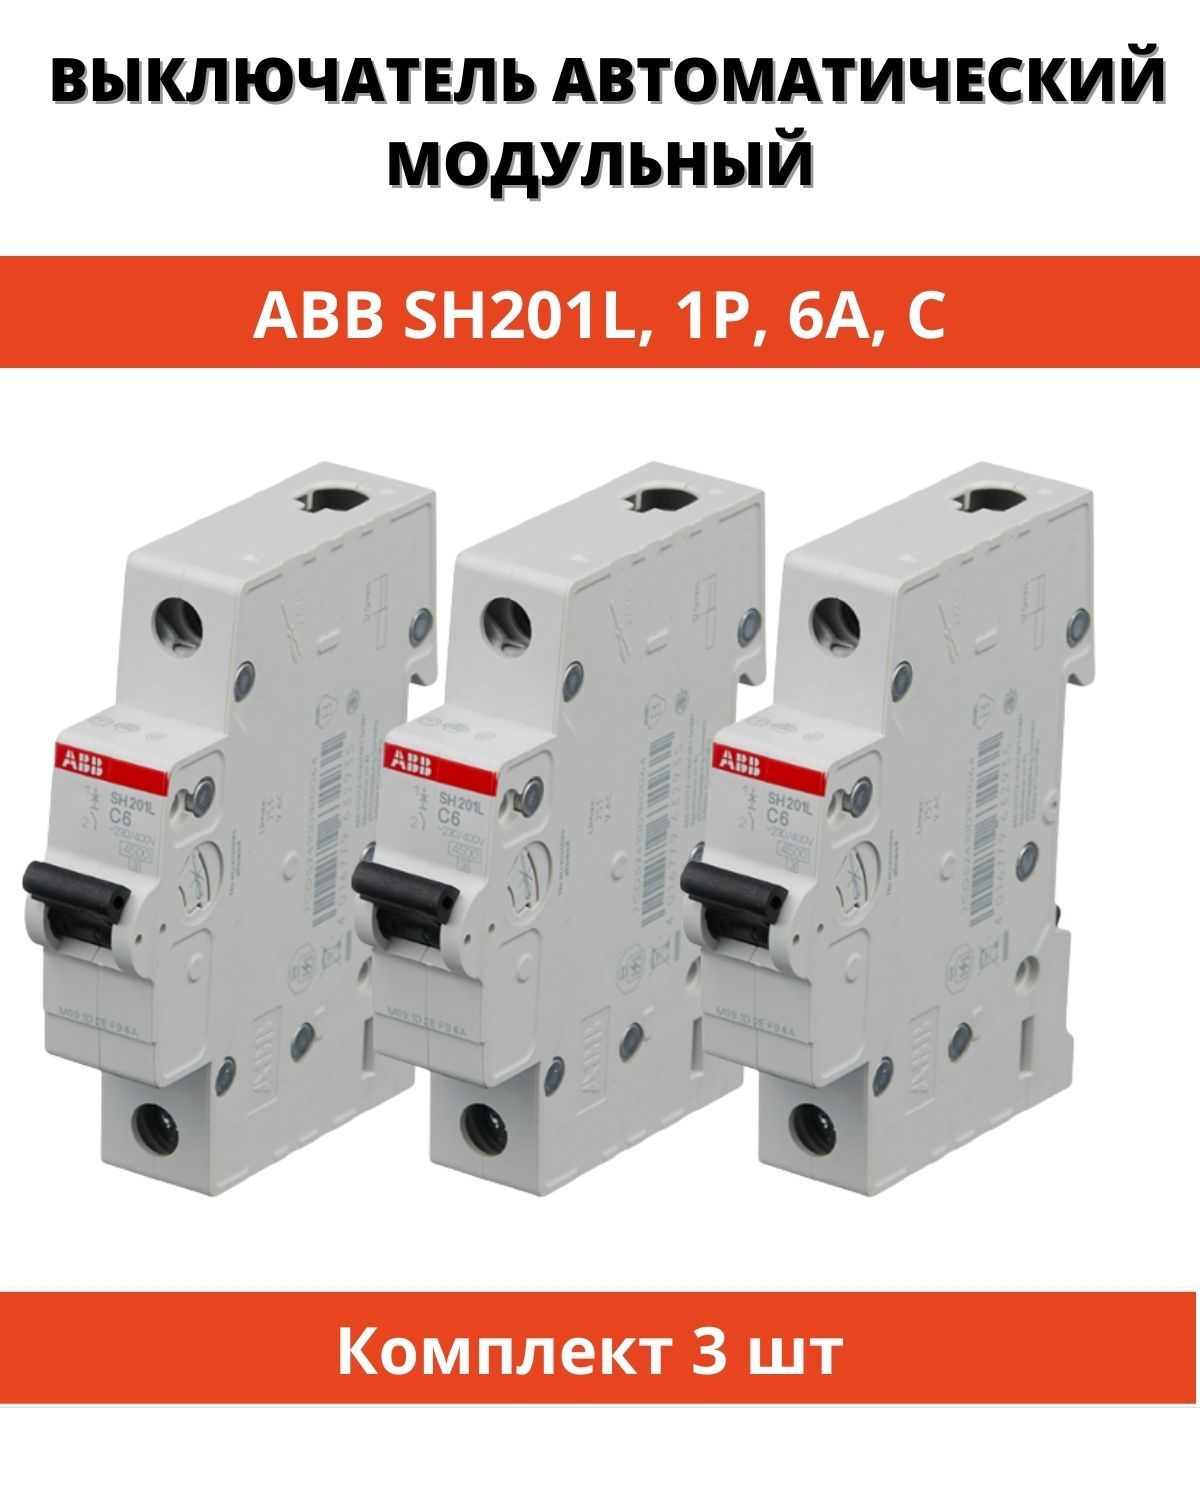 Автоматический выключатель abb sh201l. ABB sh201. Автомат ABB sh201 16a. Ширина 1 модуля автомата АББ. Автоматический выключатель ABB sh201l c10.